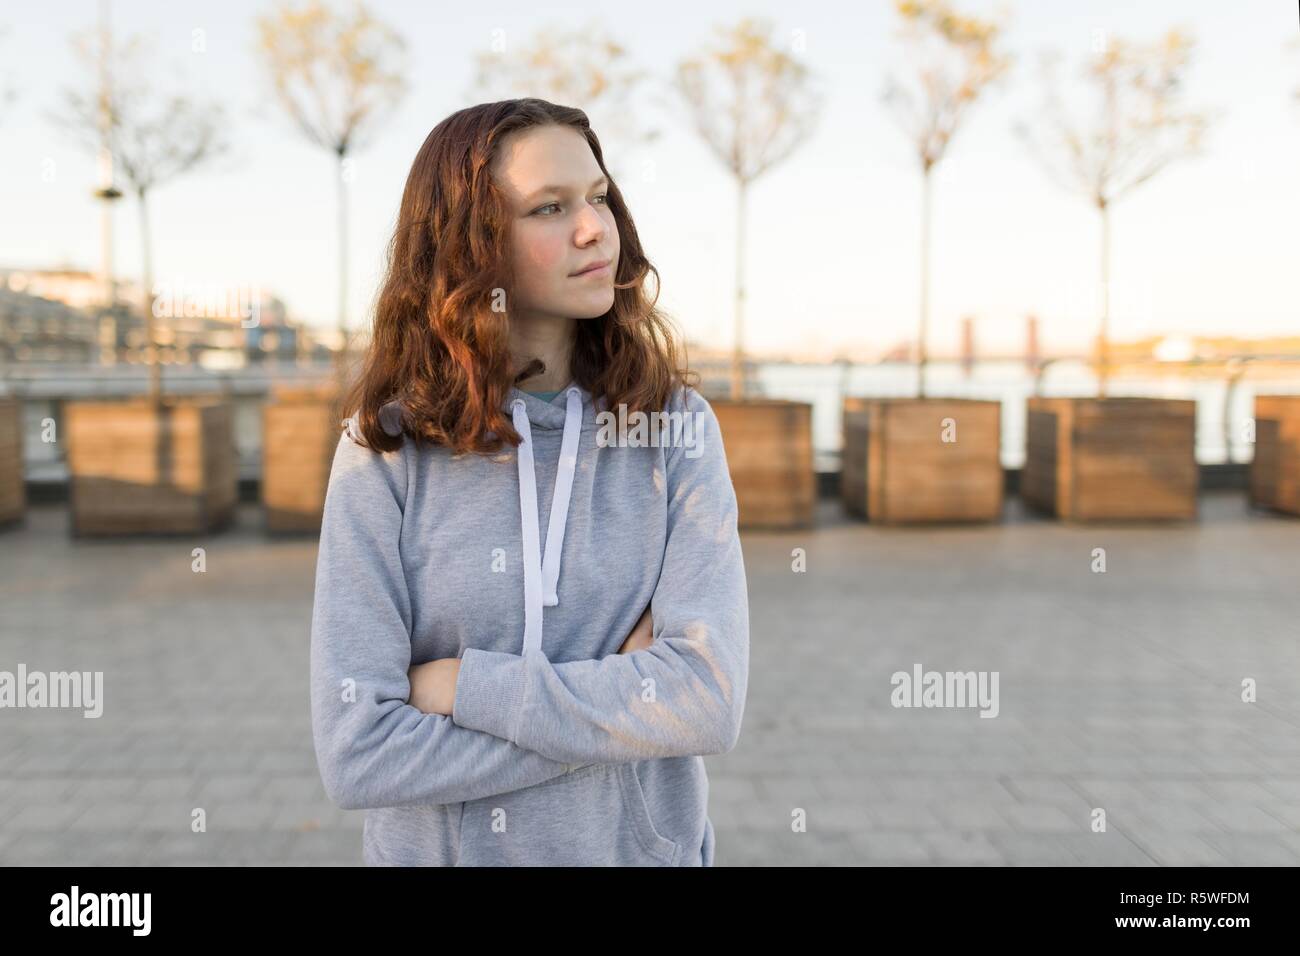 Portrait en extérieur d'un beautiful smiling adolescent fille de 14, 15 ans, l'heure d'or Banque D'Images